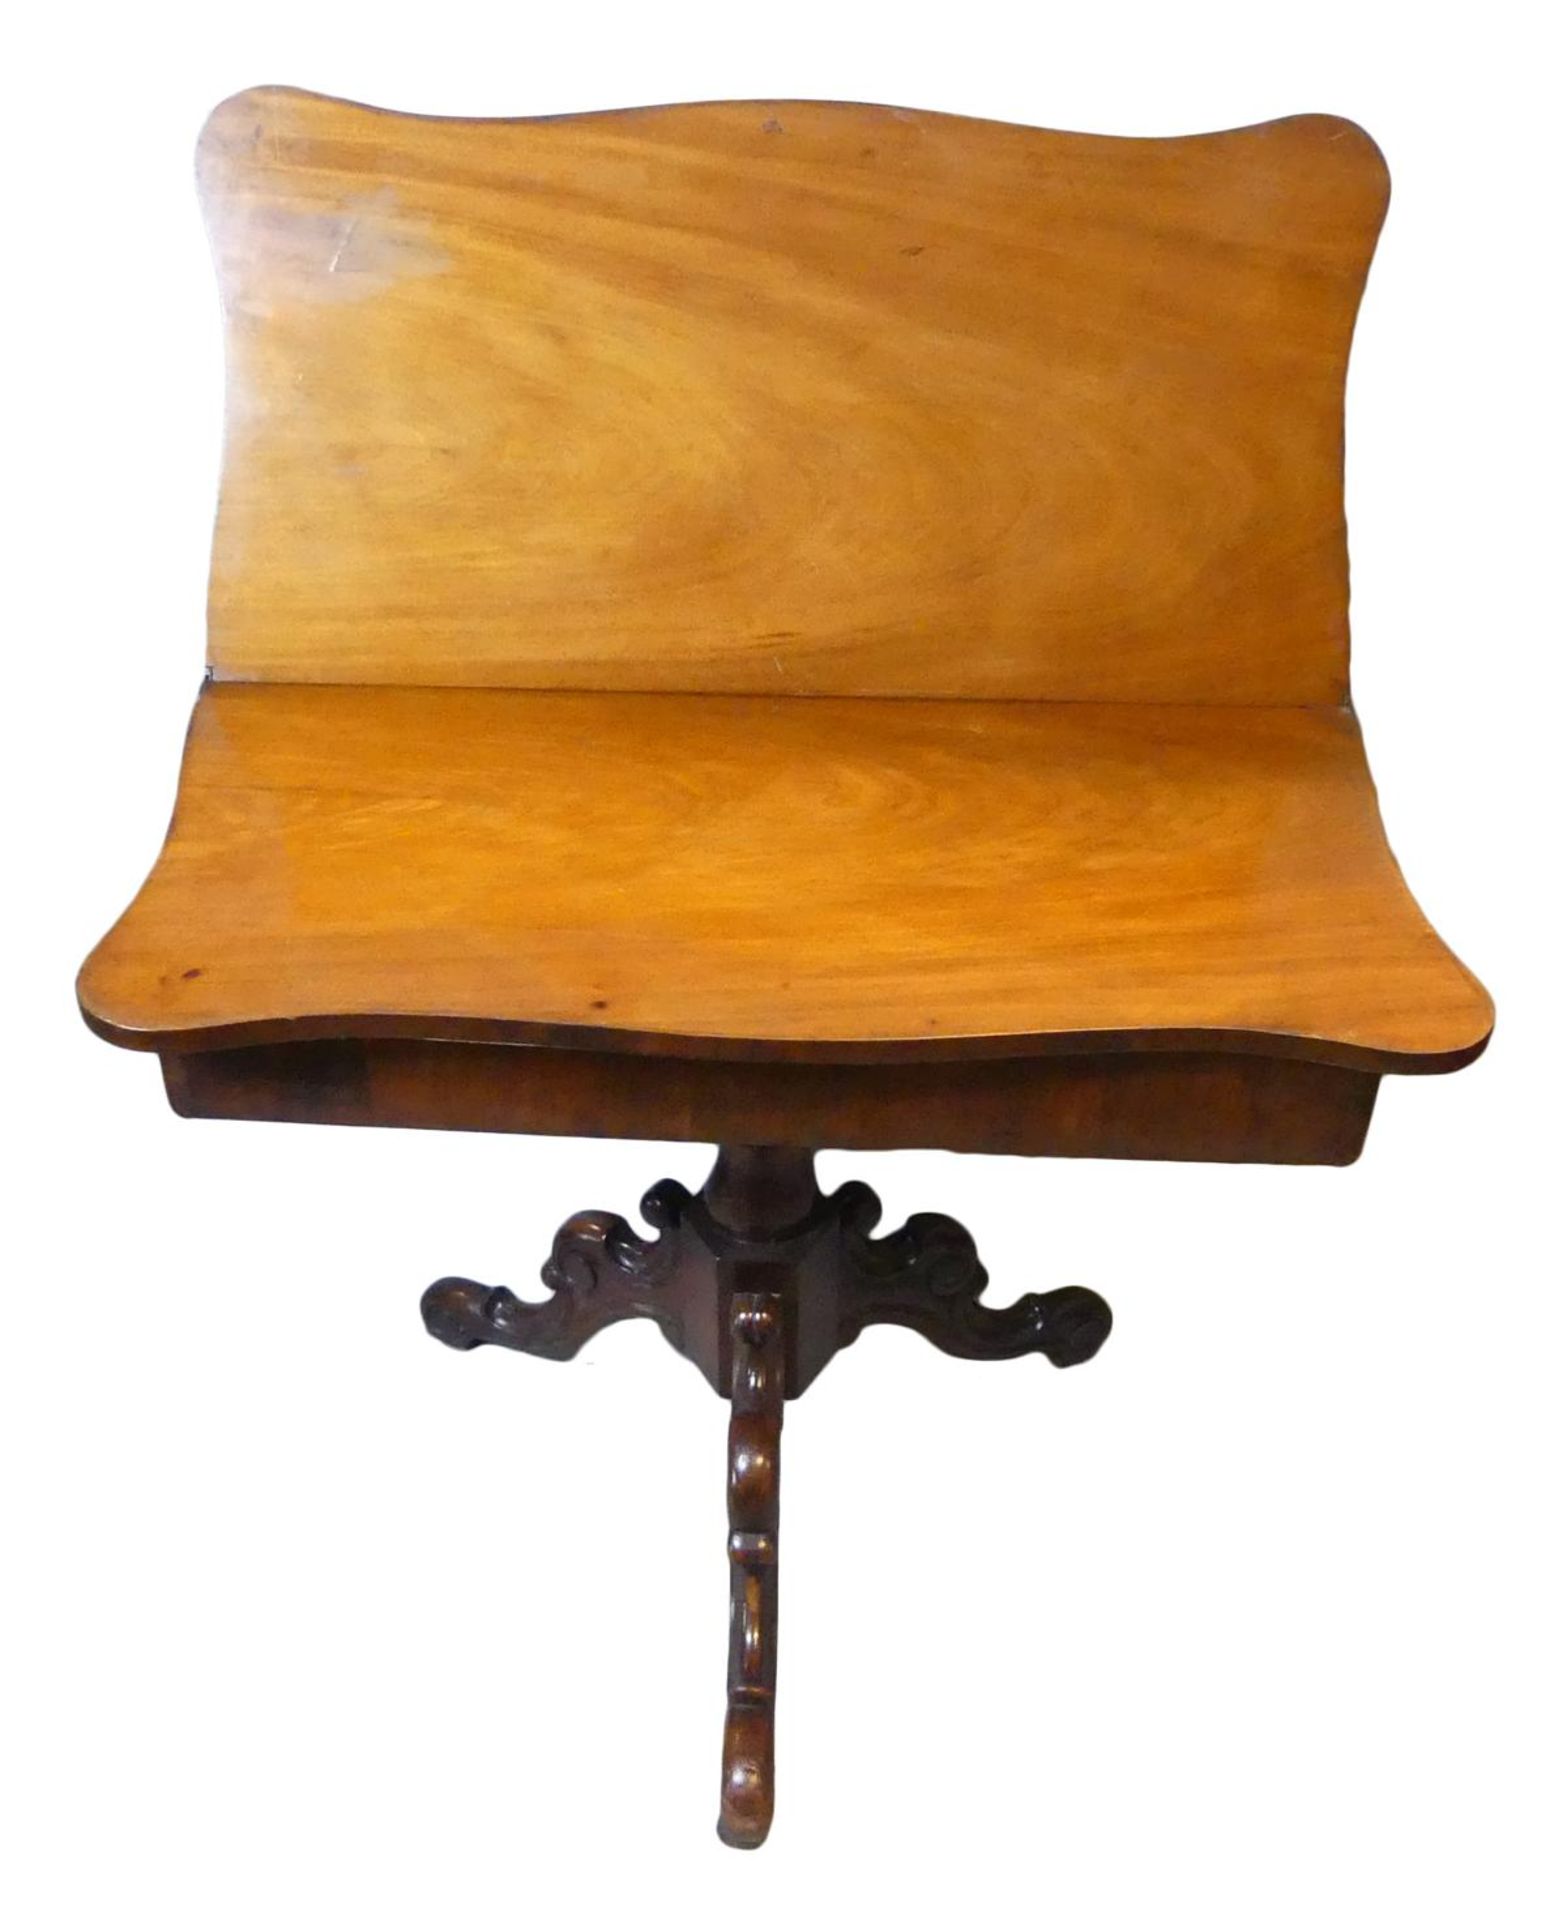 Tisch, Mahagoni, klappbar, auf drei Füßen, H. ca. 65, B. 84, T. 2 x 42 cm - Image 2 of 2